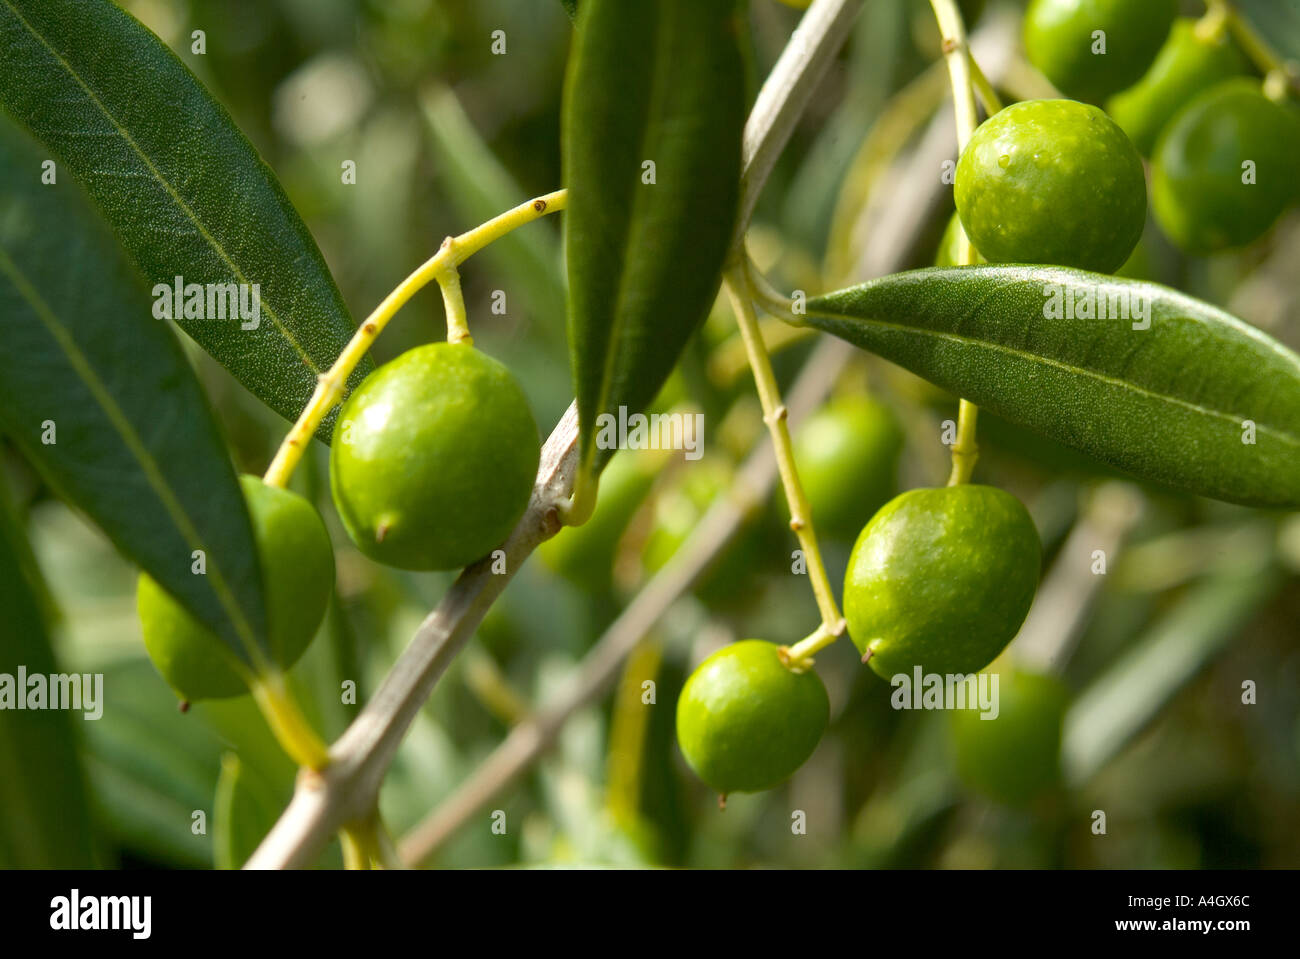 ripening olives on tree Stock Photo